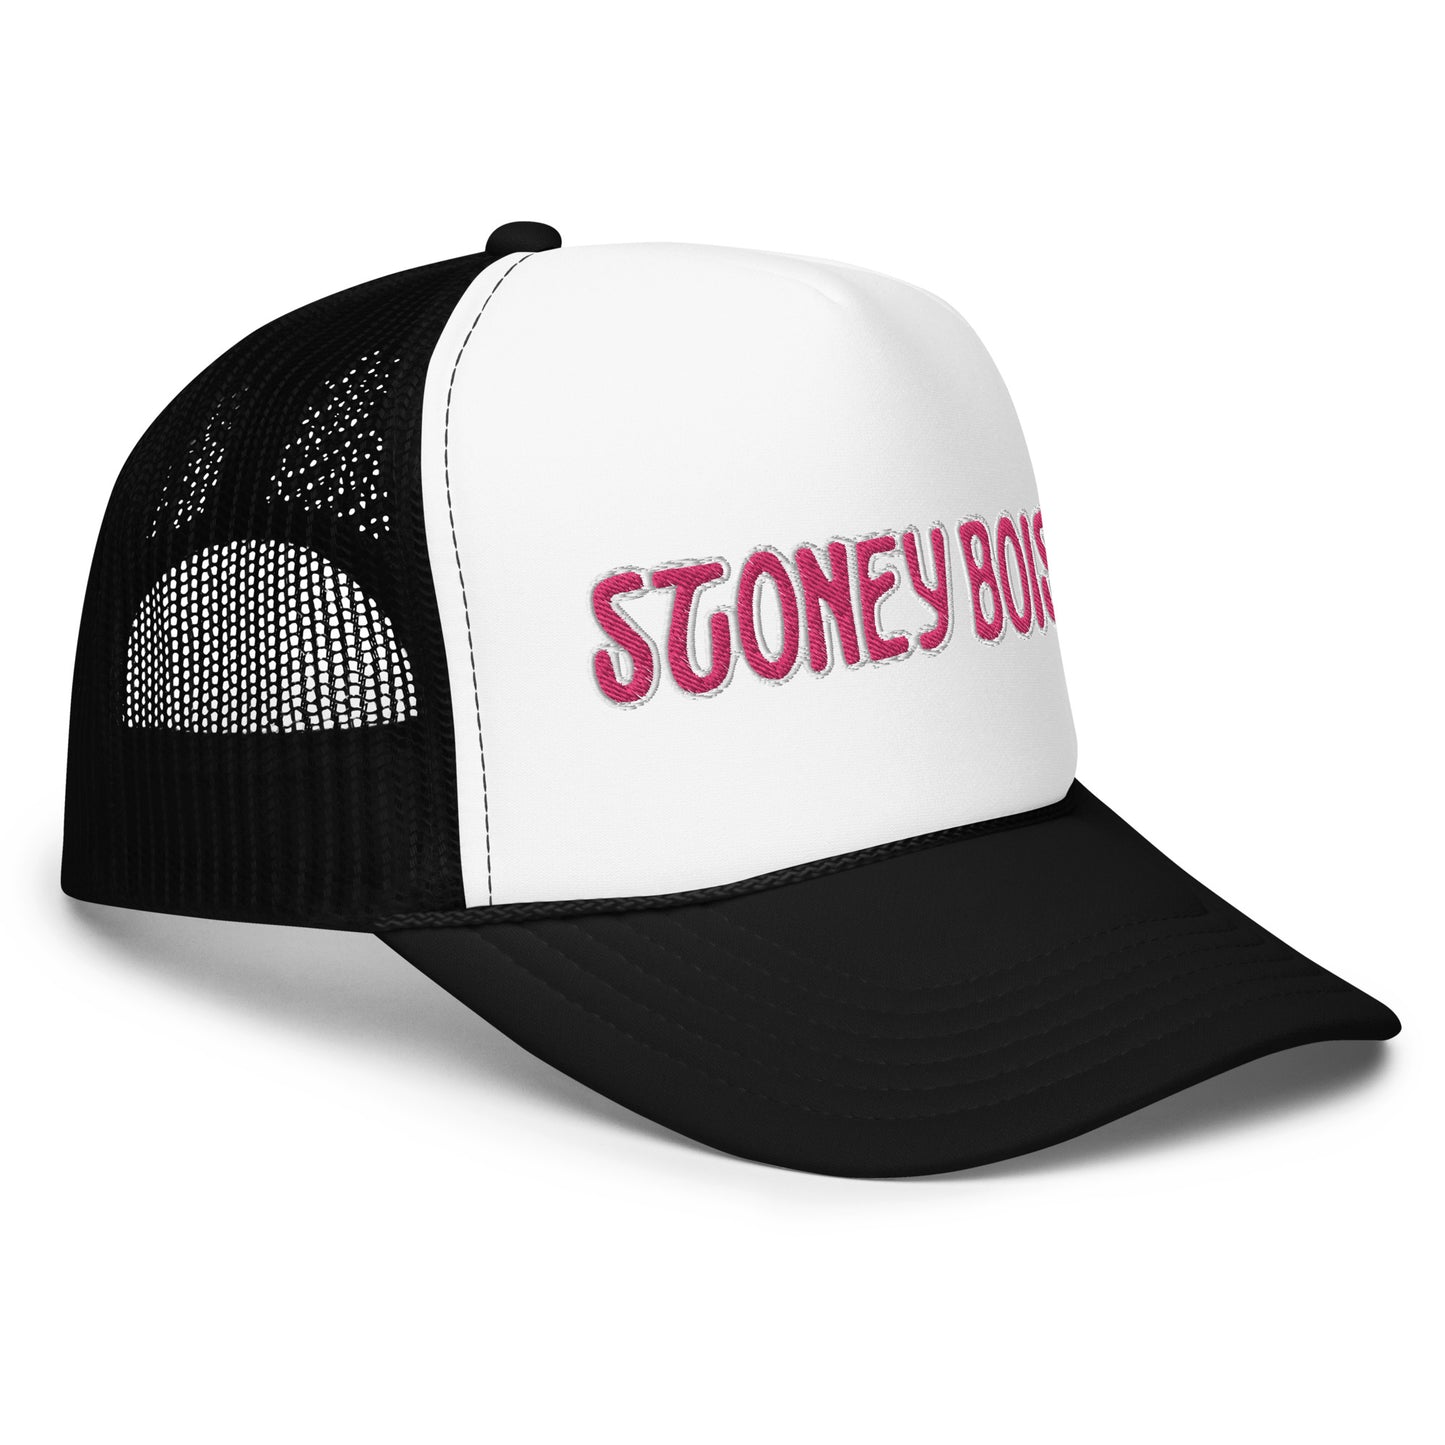 StoneyBois™ Foam trucker hat